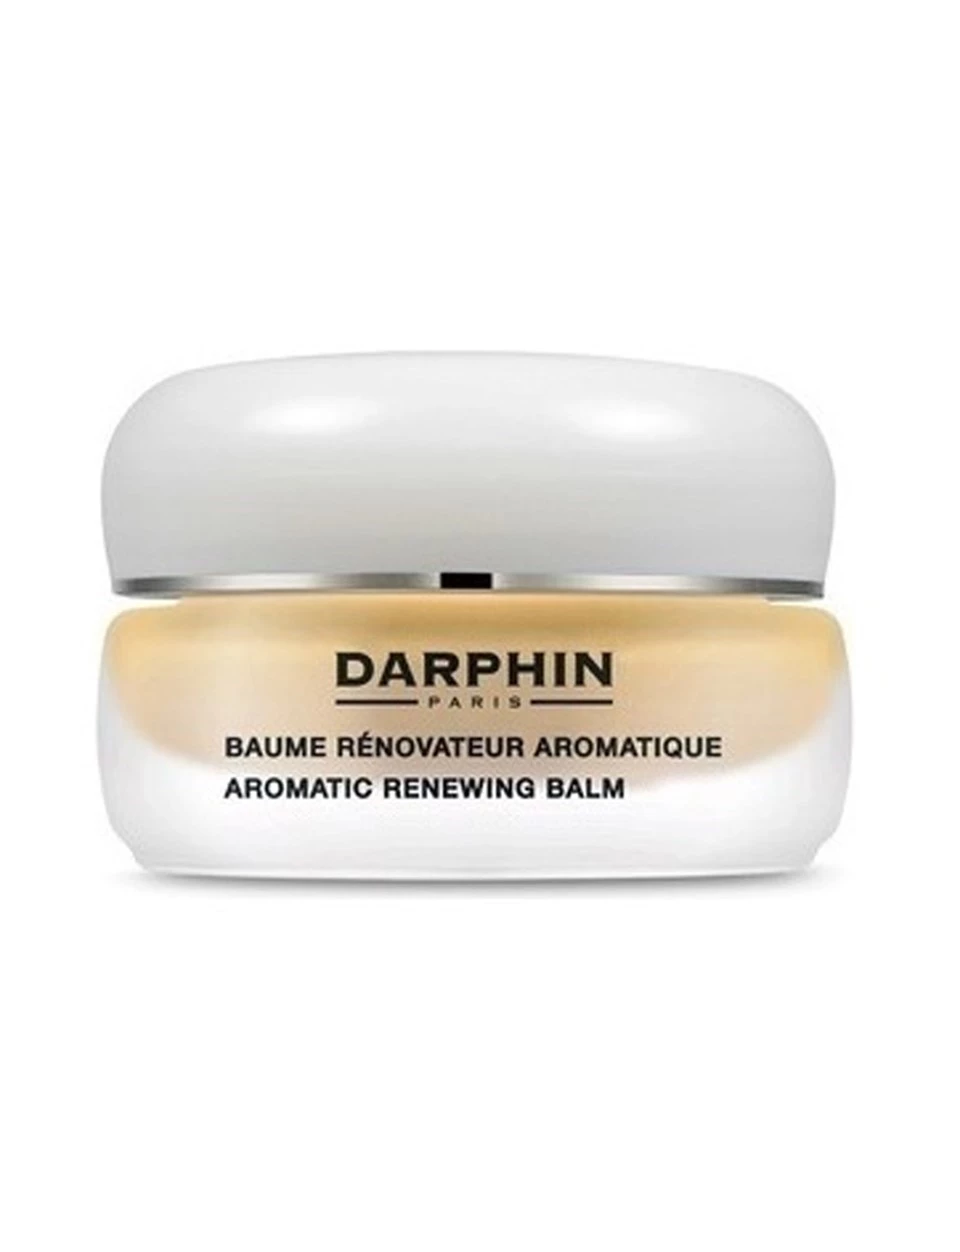 Darphin Aromatic Renewing Balm 15 ml Kuru cildi nemlendirici ve yumuşatıcı balm